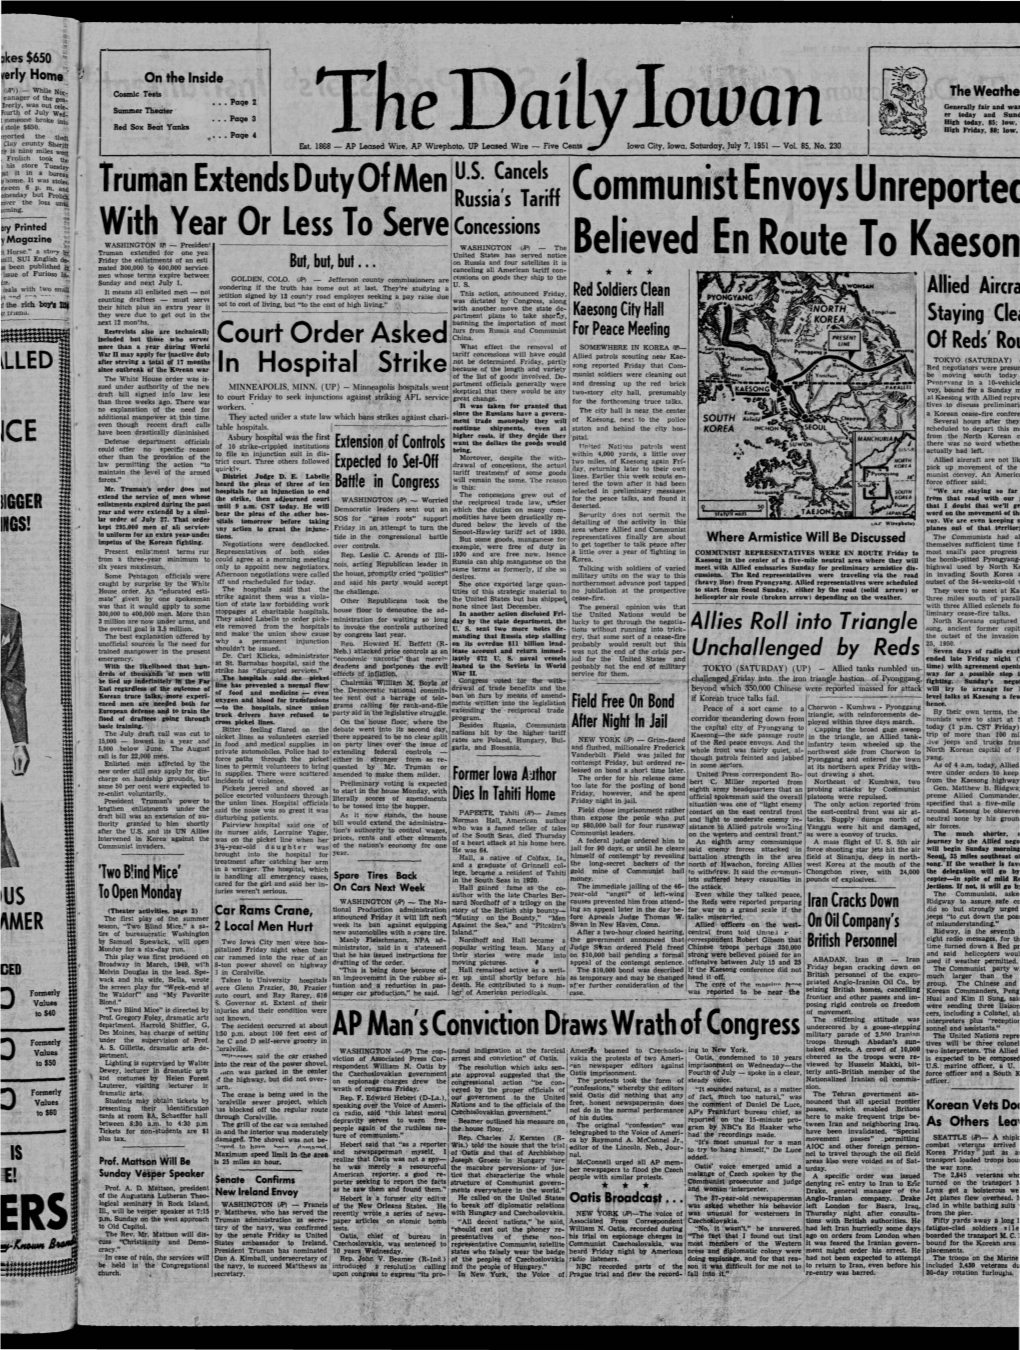 Daily Iowan (Iowa City, Iowa), 1951-07-07